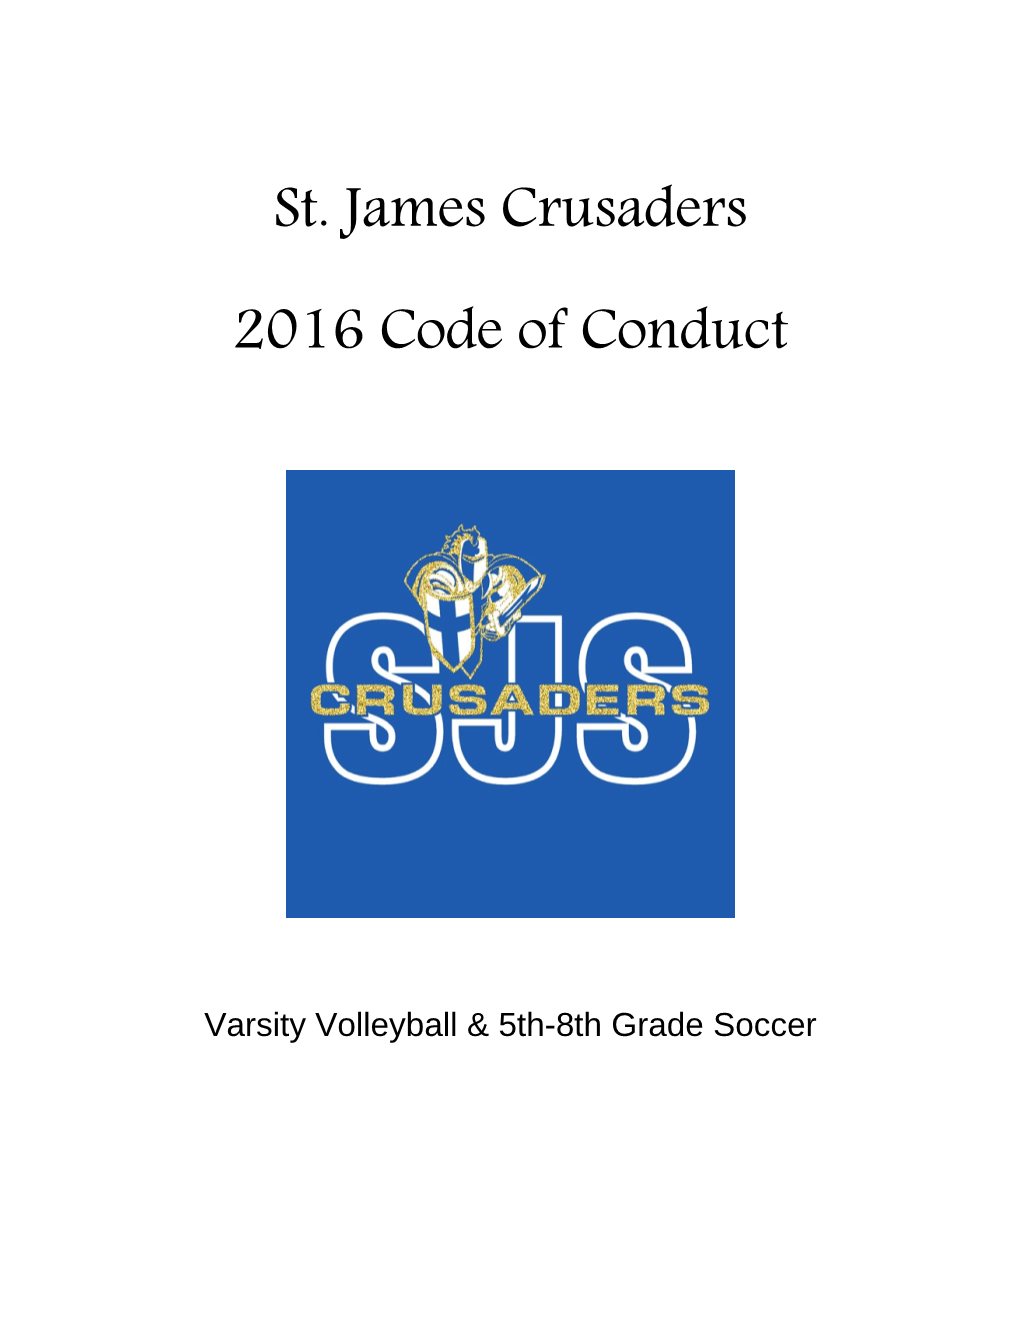 Varsity Volleyball & 5Th-8Th Grade Soccer